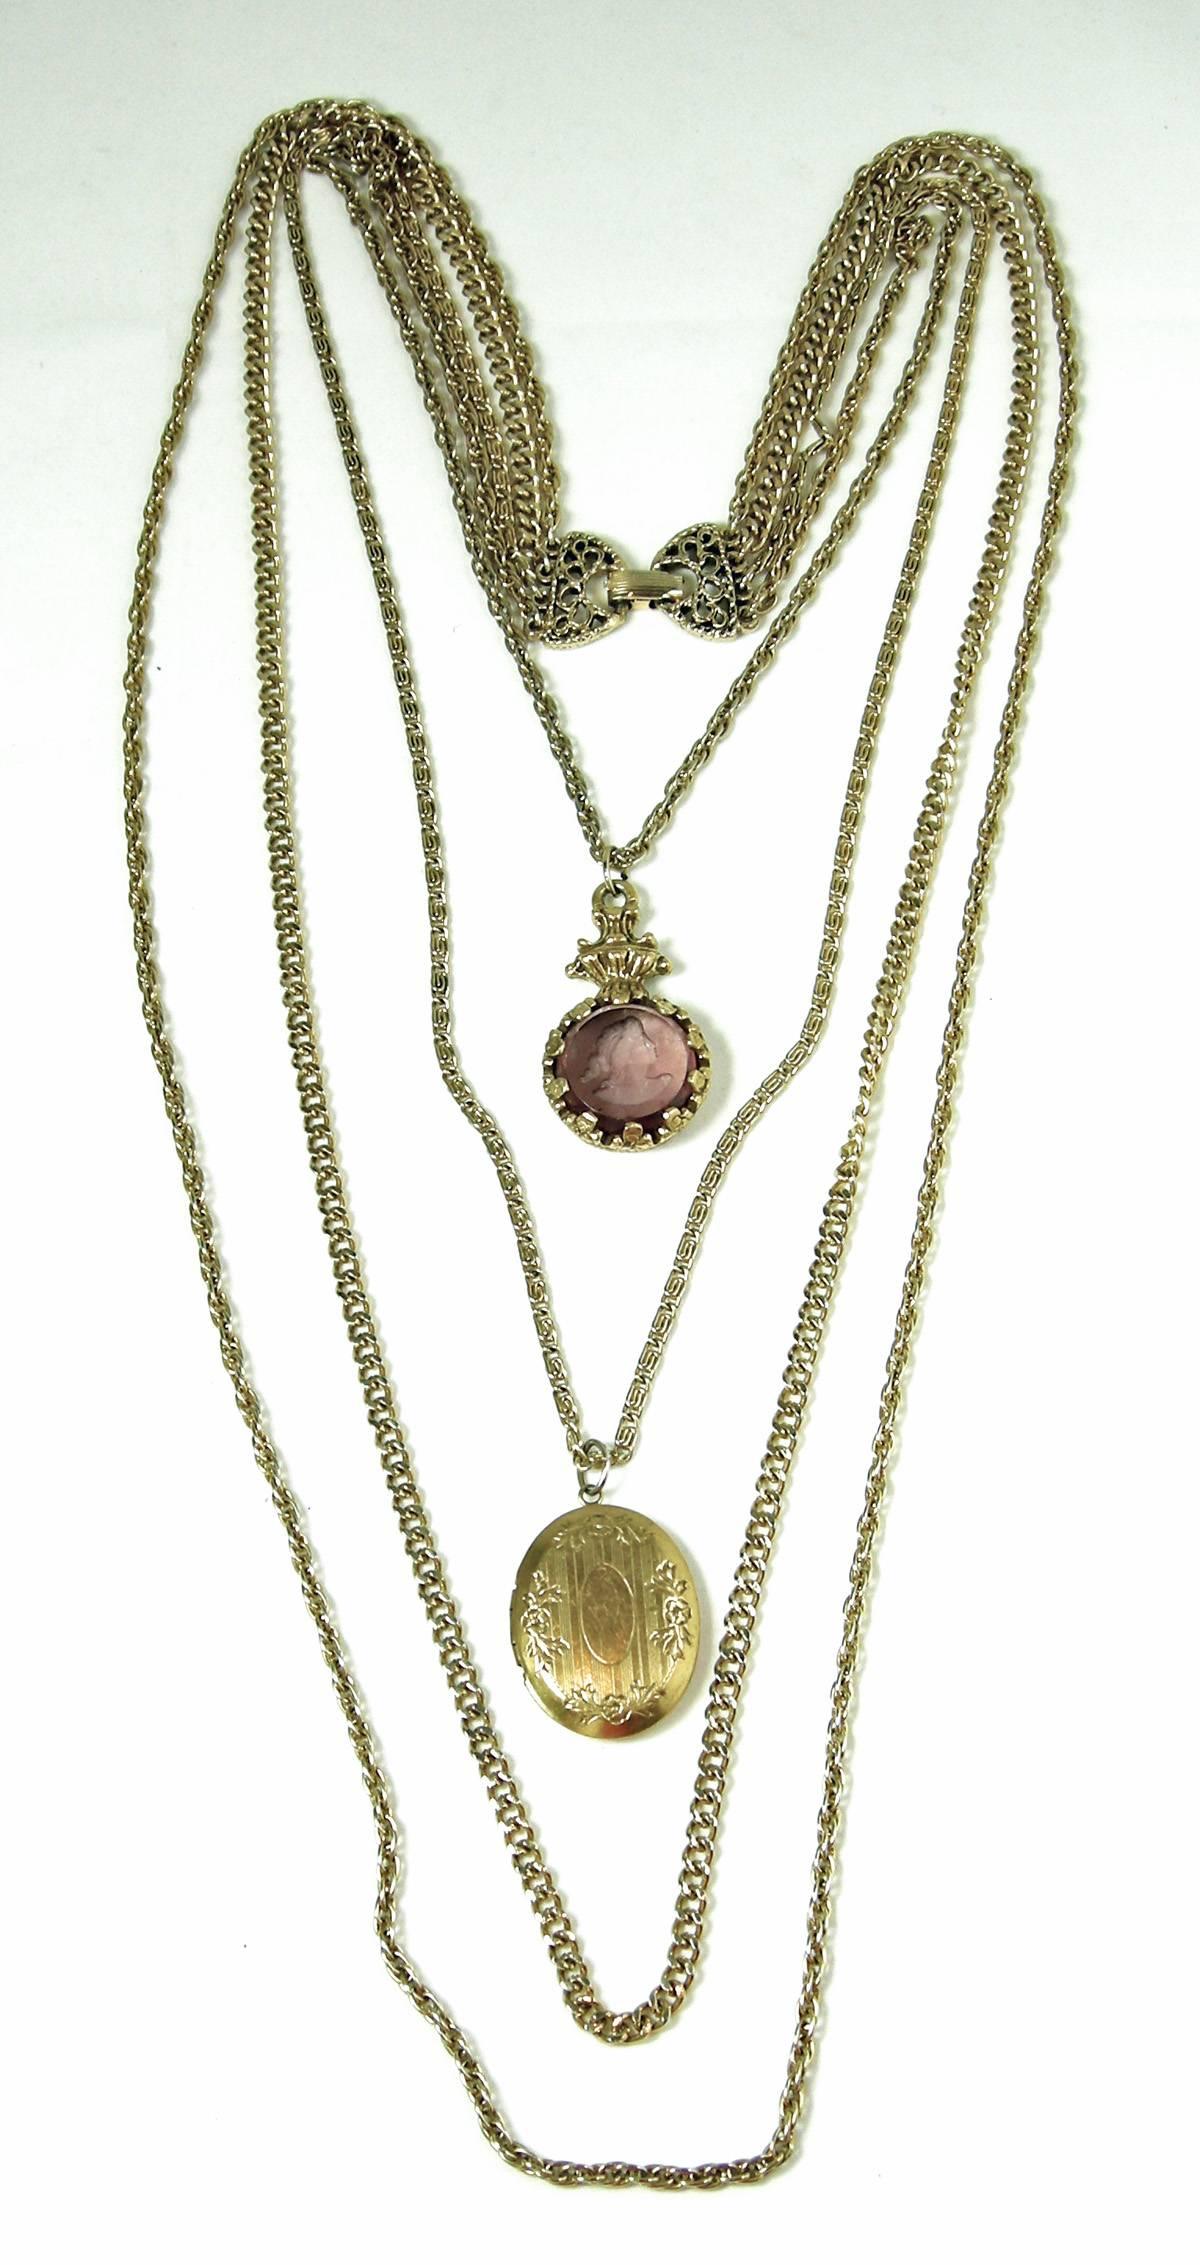  Ce collier Goldette vintage des années 1960 est magnifique. Il comporte 4 chaînes en finition dorée. La première chaîne est de 19-1/2